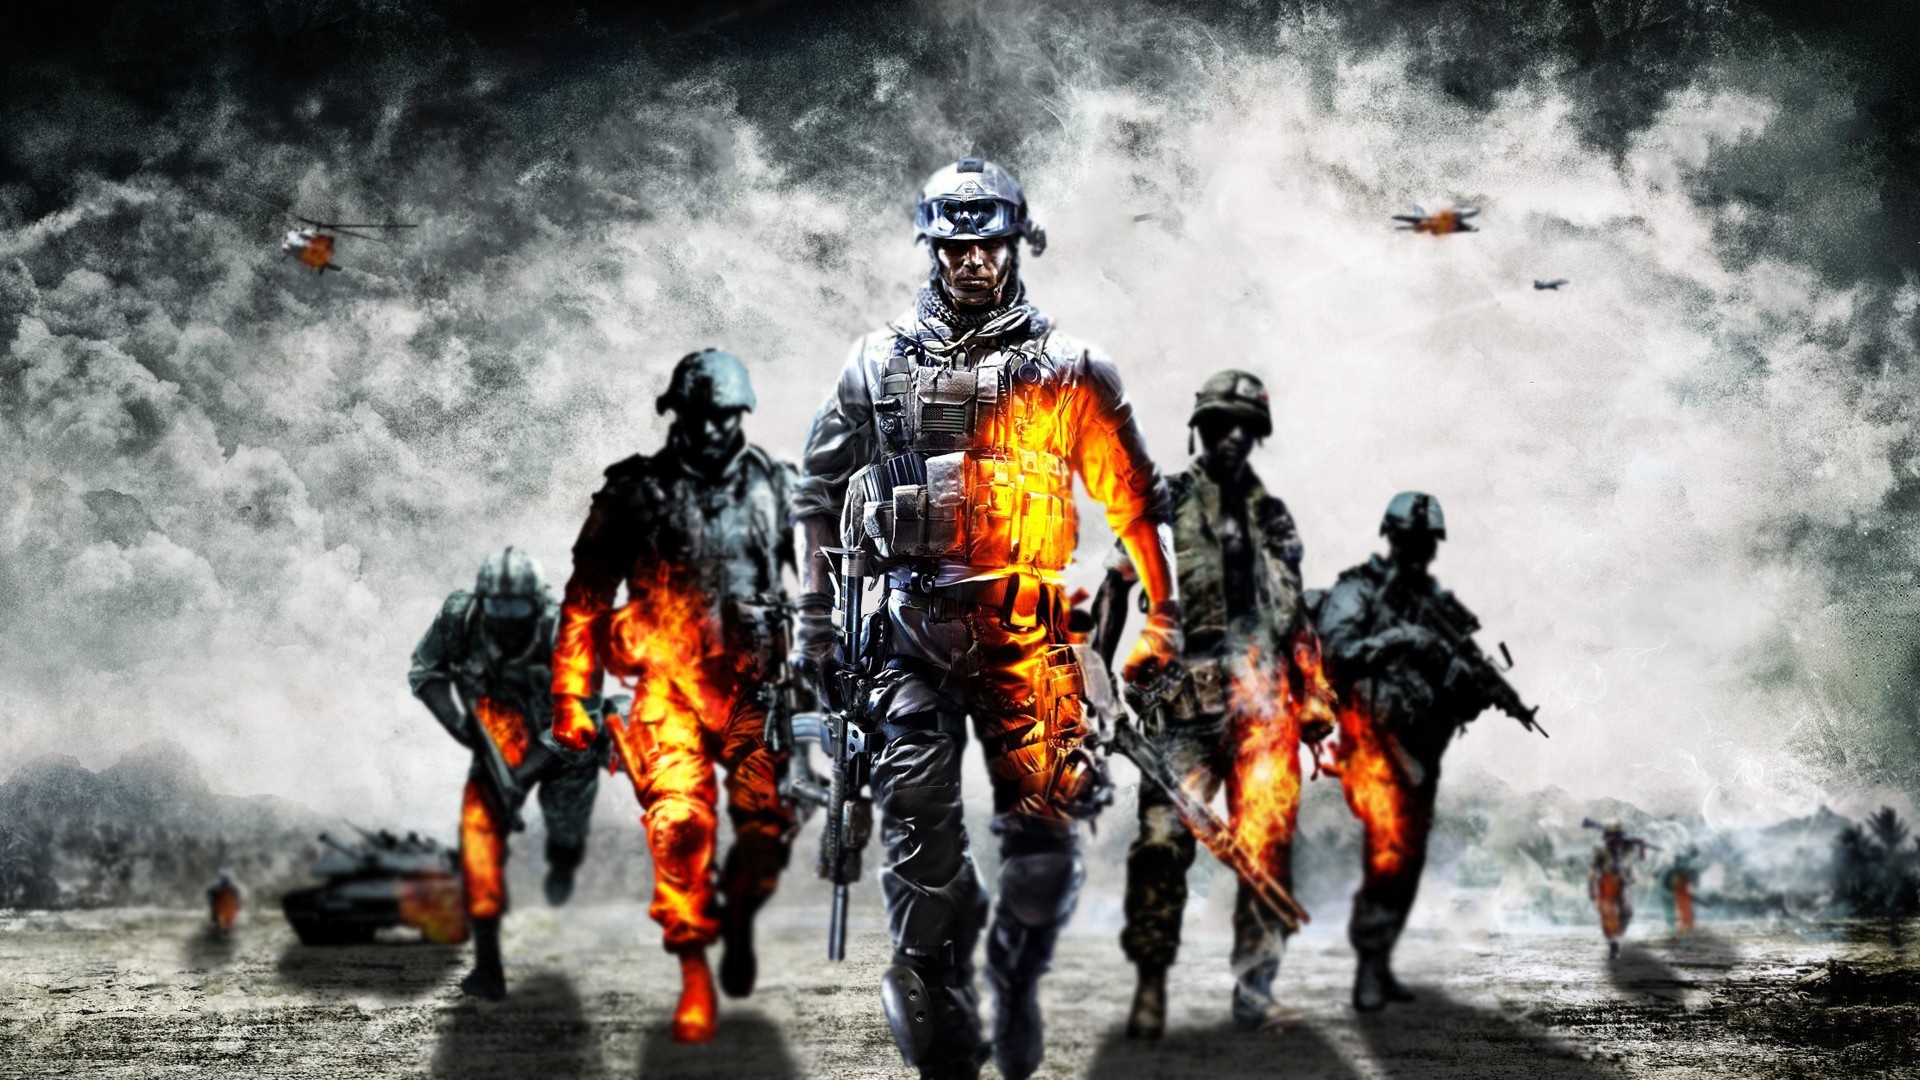 لعبة Battlefield 5 ستدور أحداثها بالحرب العالمية الأولى وستكون تخطيطية